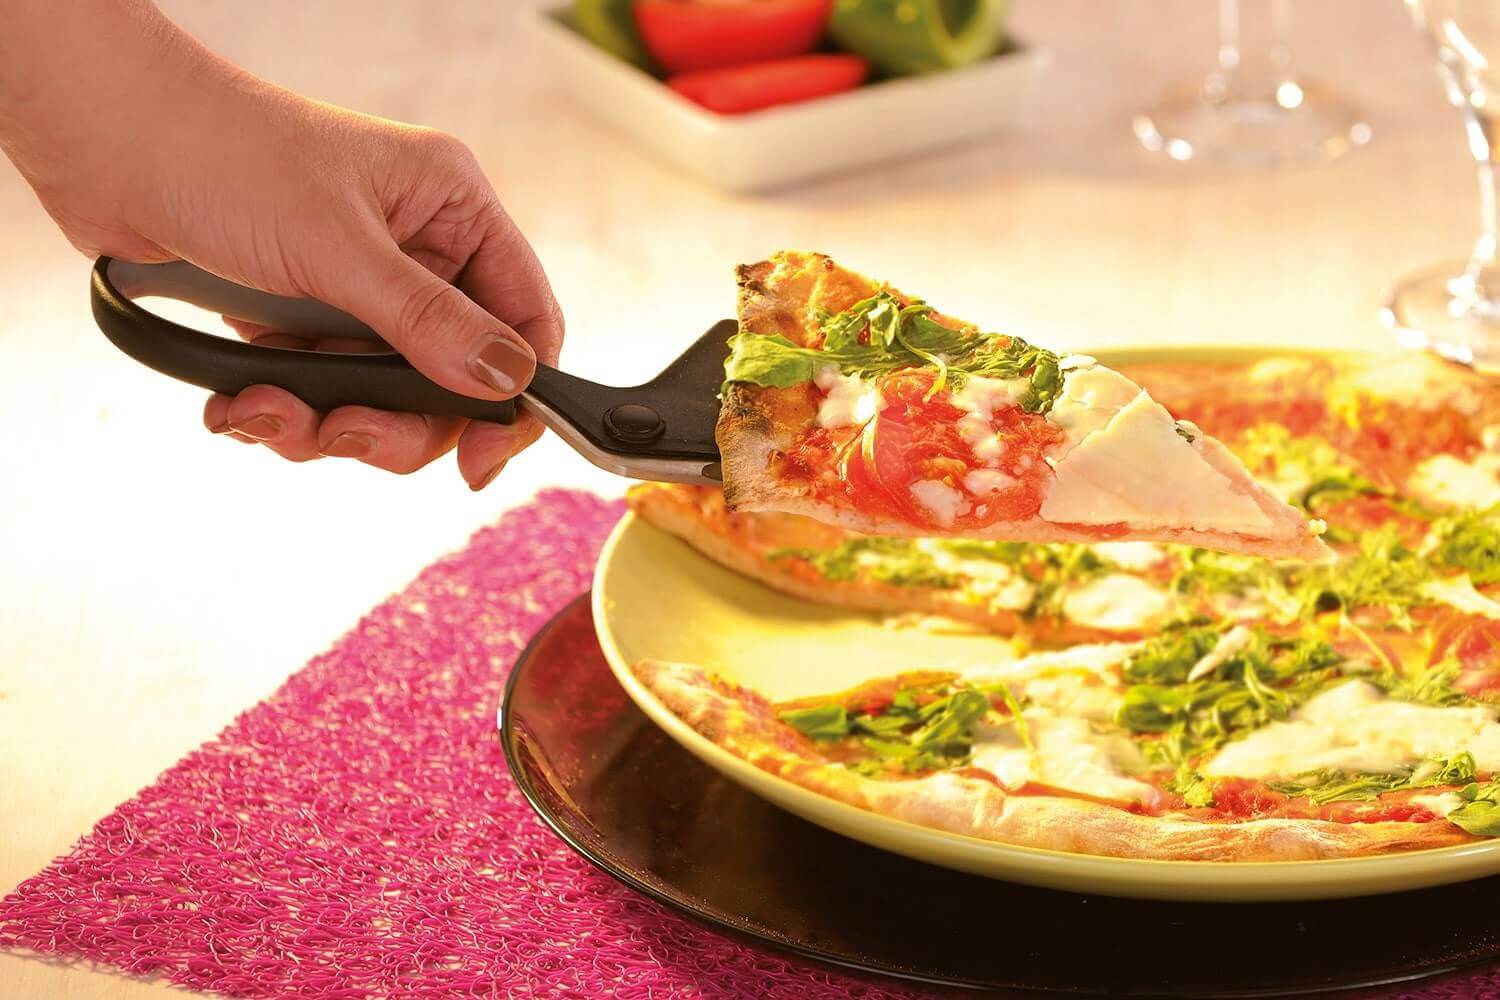 Coofit Pizza Ciseaux en acier inoxydable - Ciseaux à pizza avec